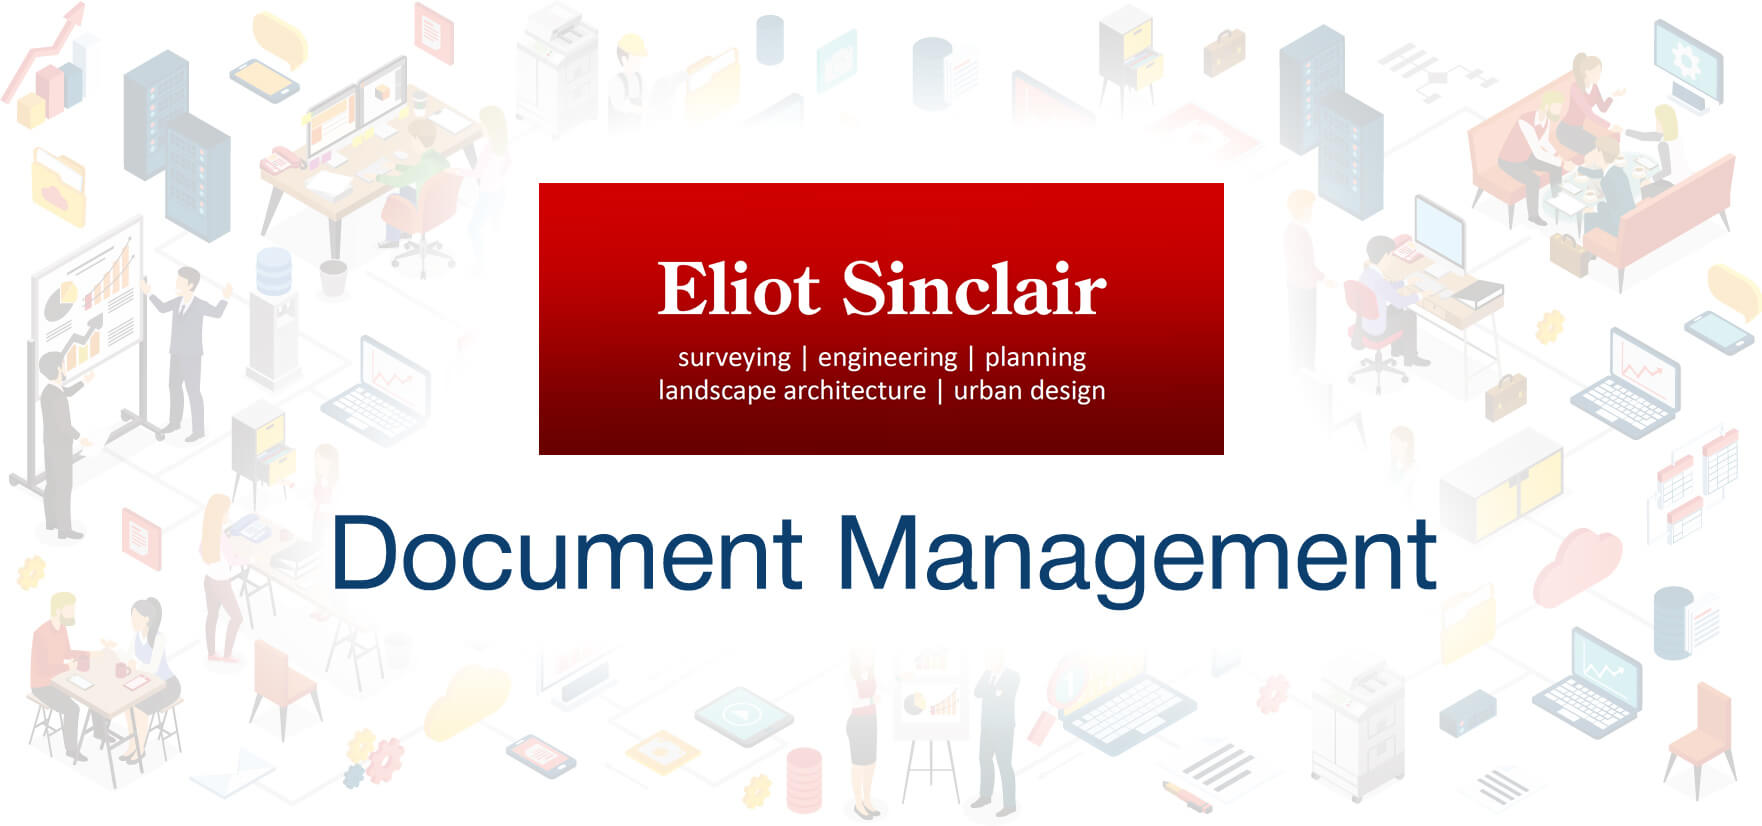 Eliot Sinclair: Document Management